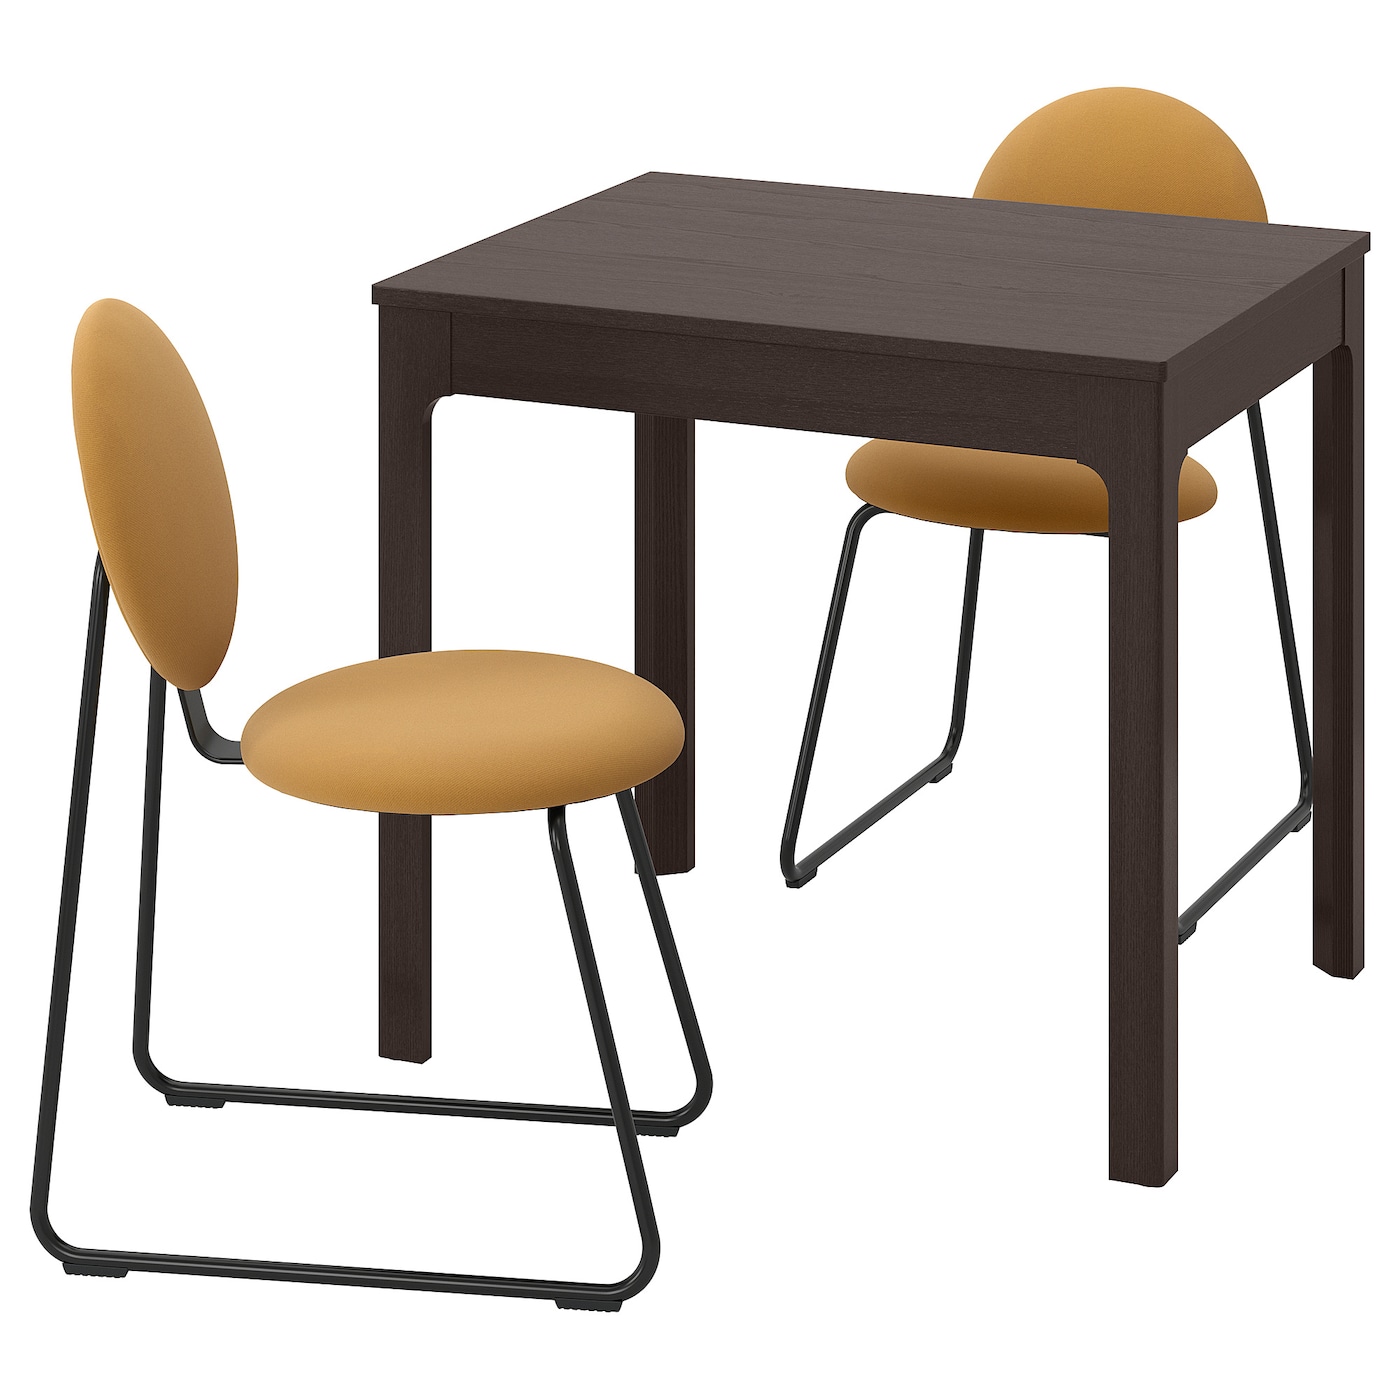 Стол и 2 стула - EKEDALEN / MÅNHULT IKEA/ЭКЕДАЛЕН/МОНХУЛЬТ ИКЕА,120х75х70 см, коричневый/желтый